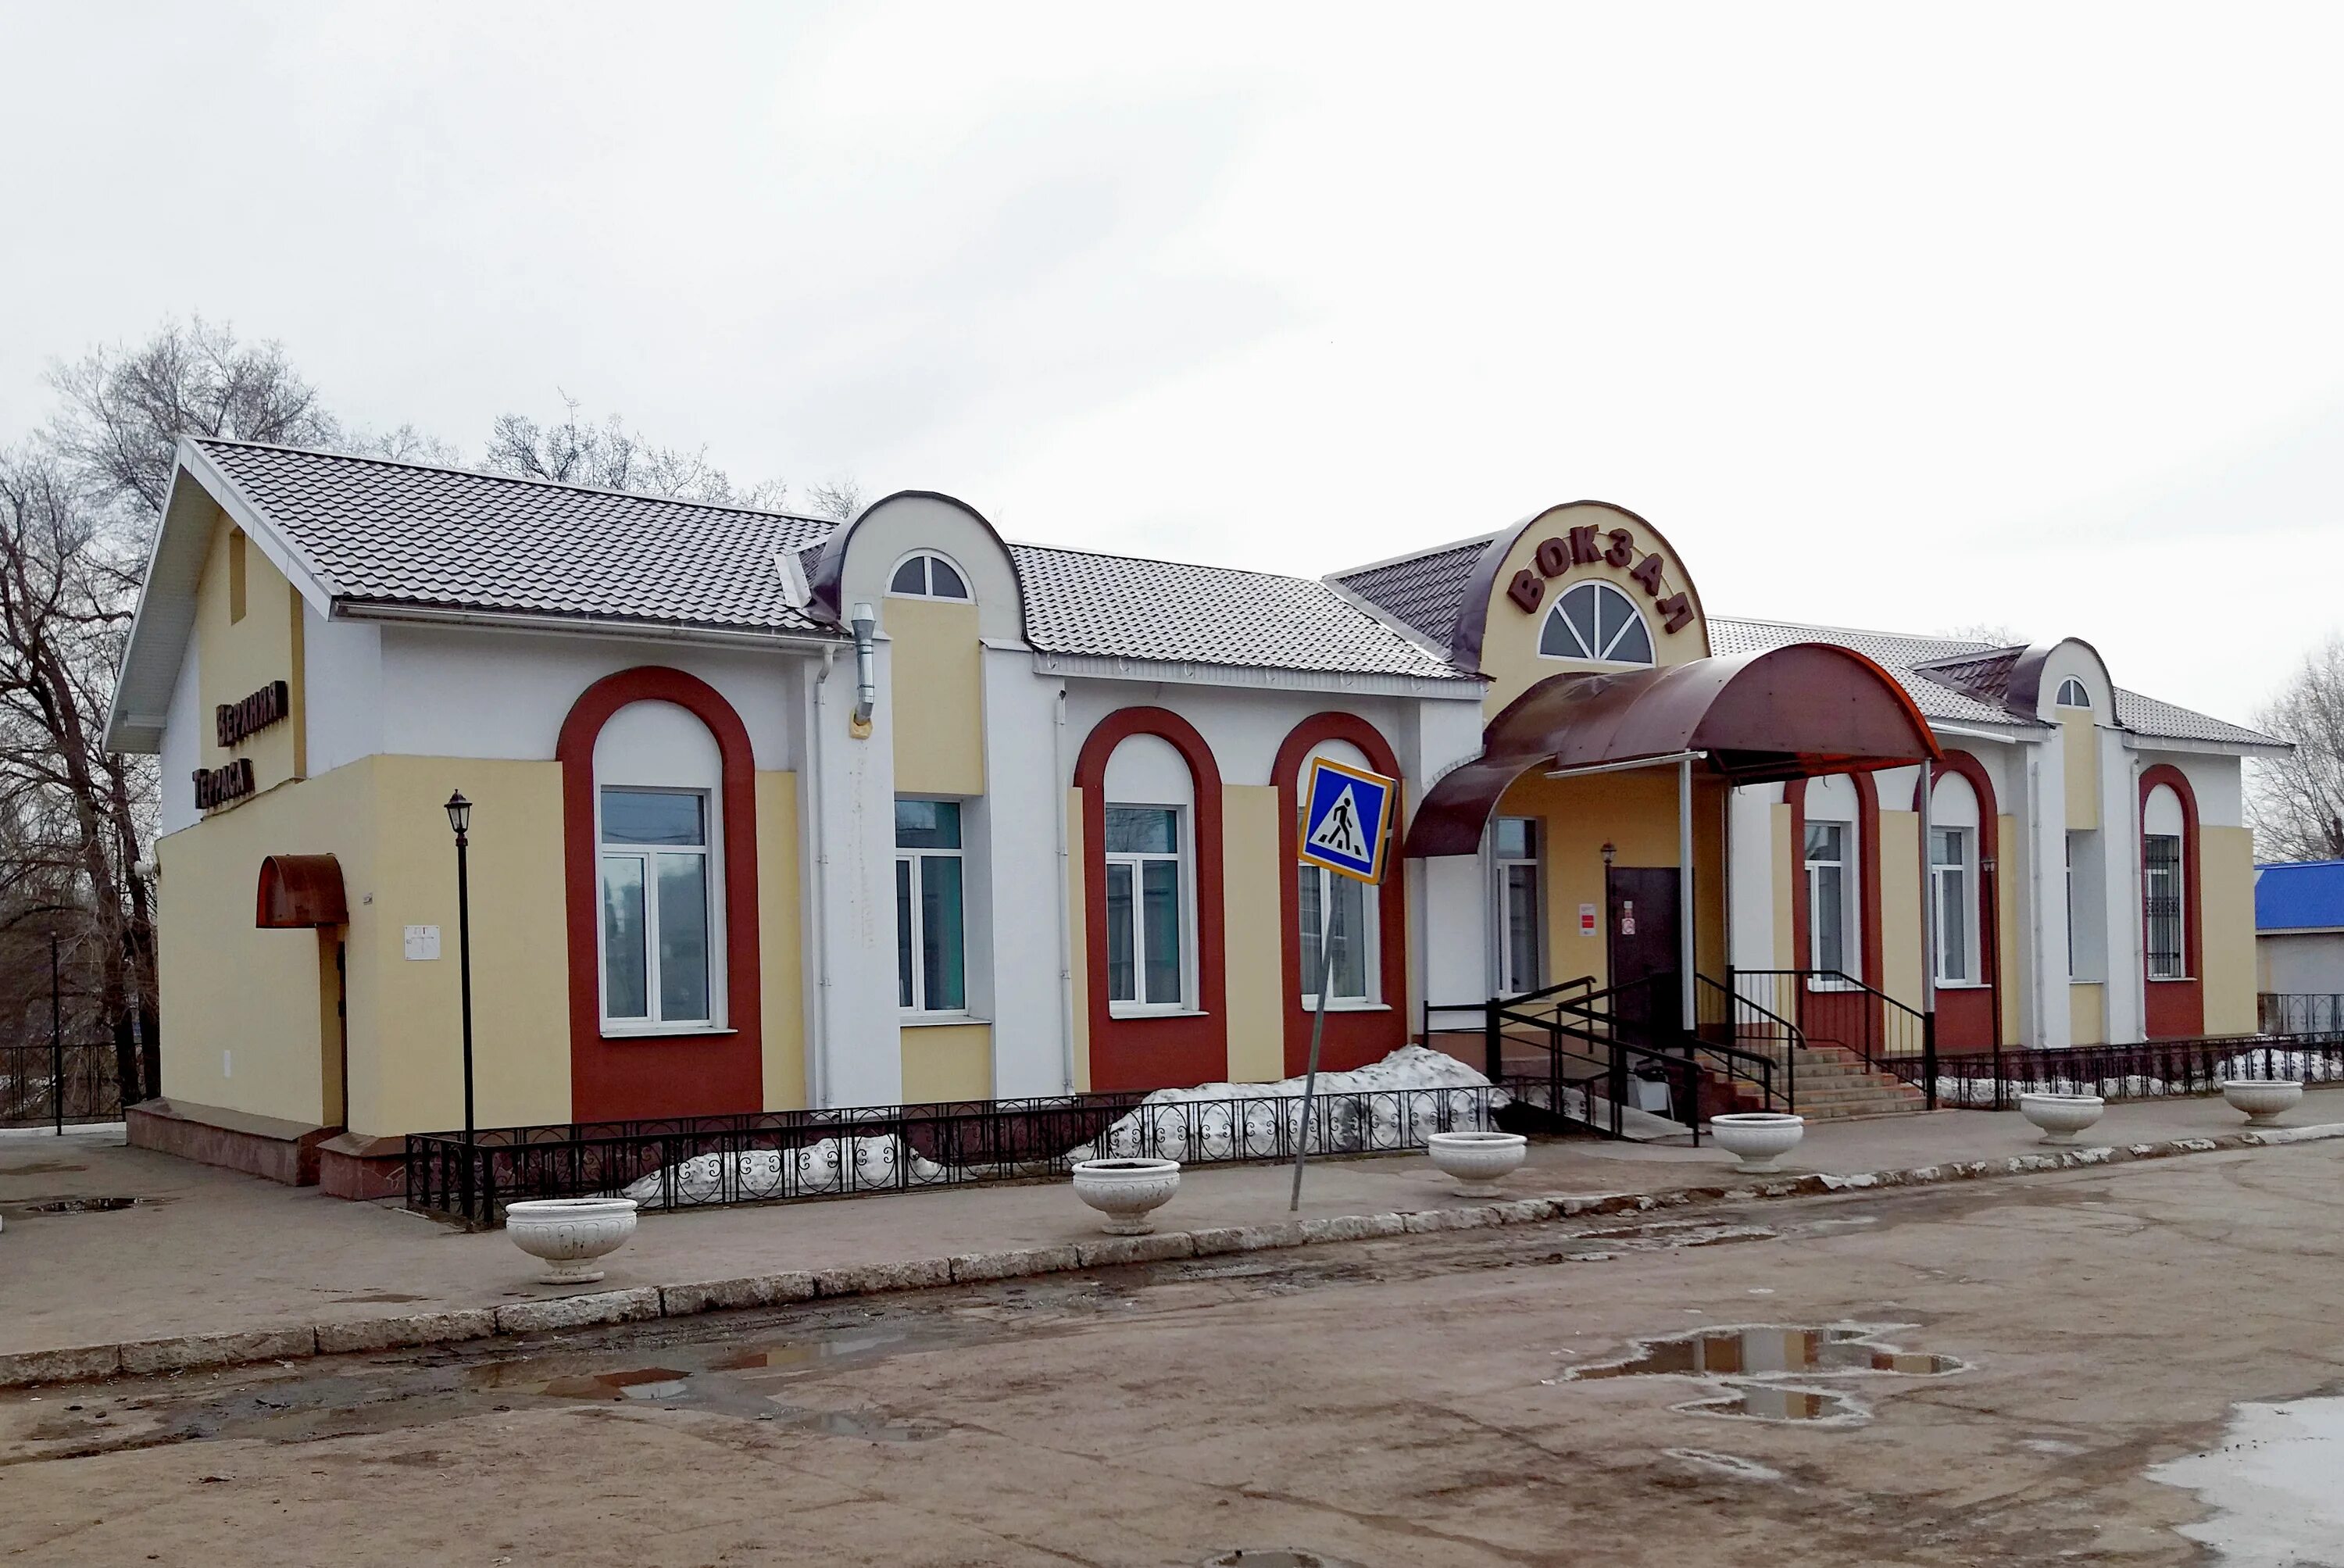 Вокзал верхняя терраса. Станция верхняя терраса Ульяновск. Вокзал верхняя терраса Ульяновск. Автовокзал Ульяновск верхняя терраса. Дом в верхней террасе